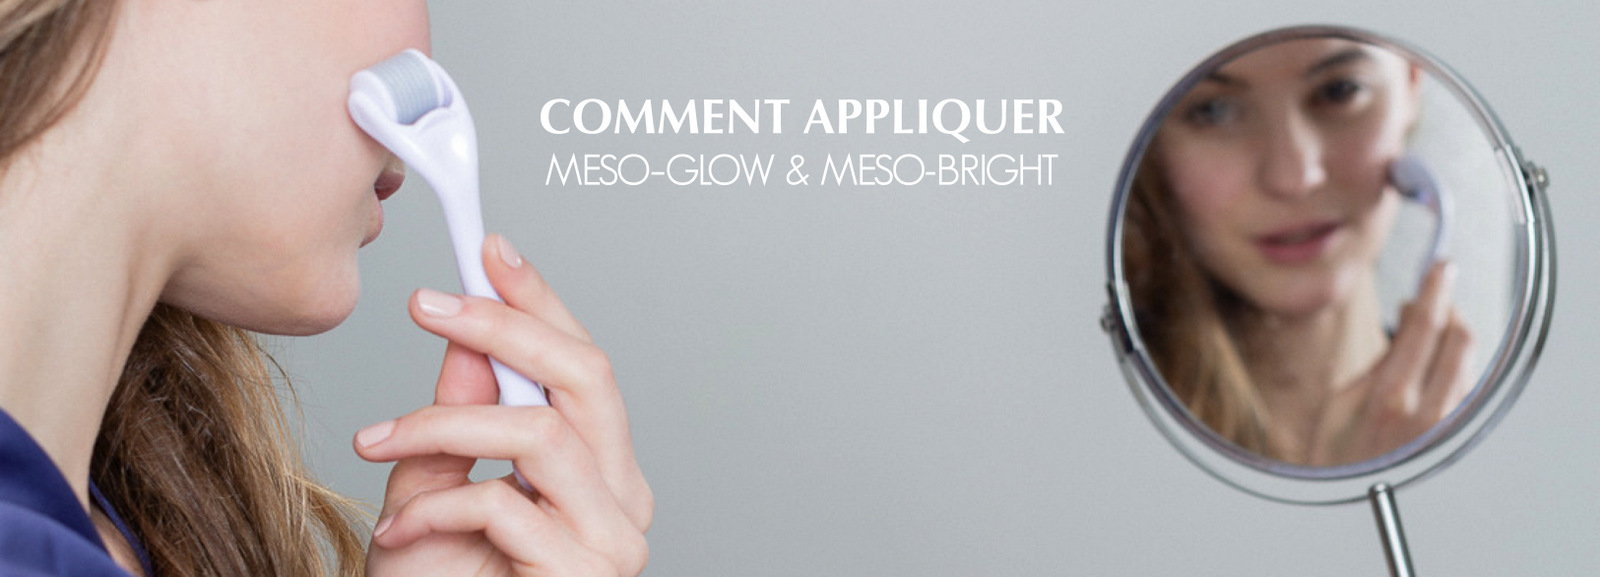 Comment appliquer MESO-GLOW & MESO-BRIGHT - Mesotherapie a domicile par Laboratoires Surface-Paris